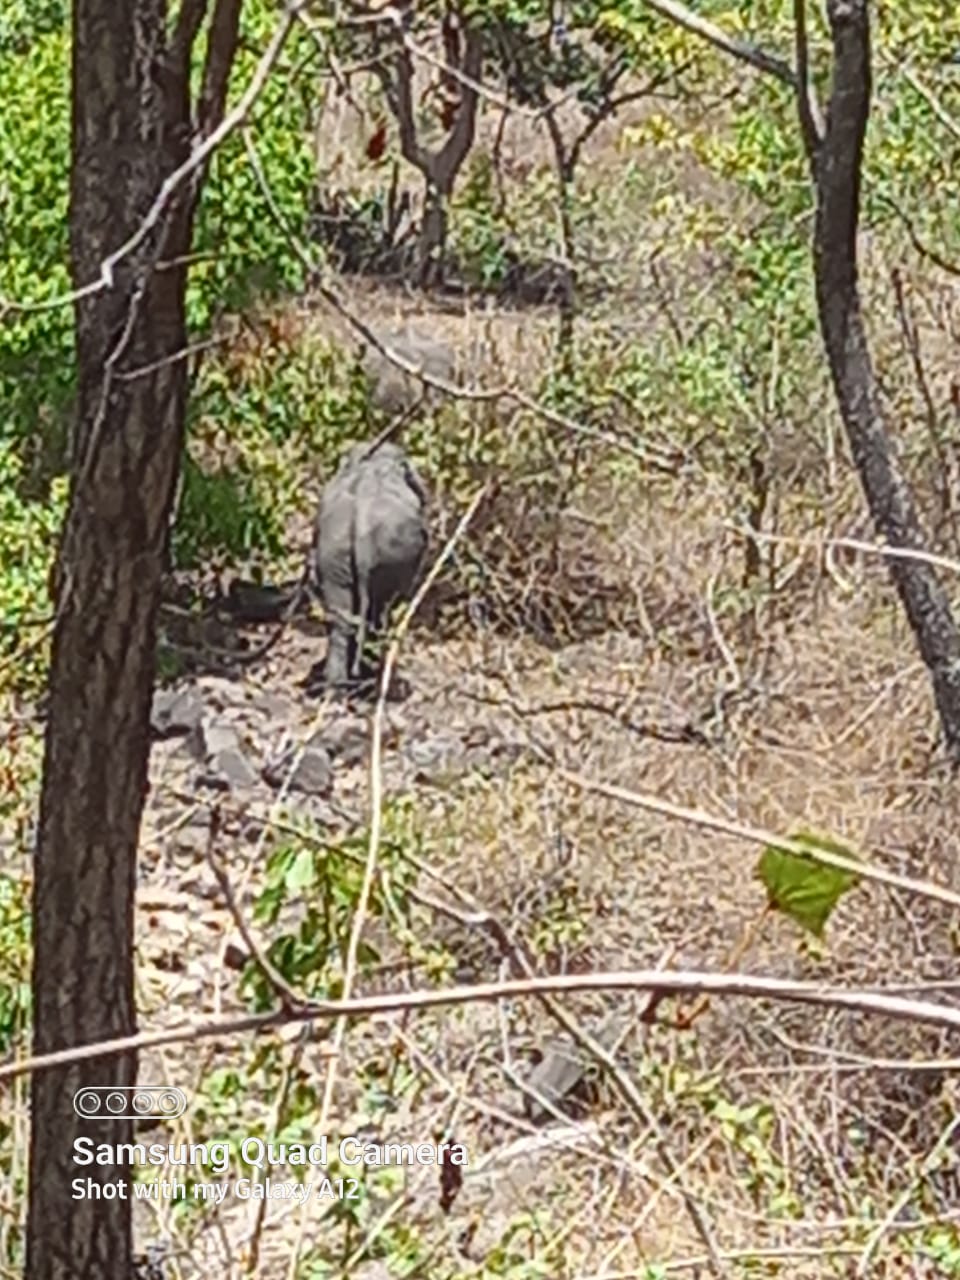 Video Story - इस वनपरिक्षेत्र में हाथियों ने बिताया दो दिन, अब ढाई माह बाद जिले की सीमा से हुए बाहर